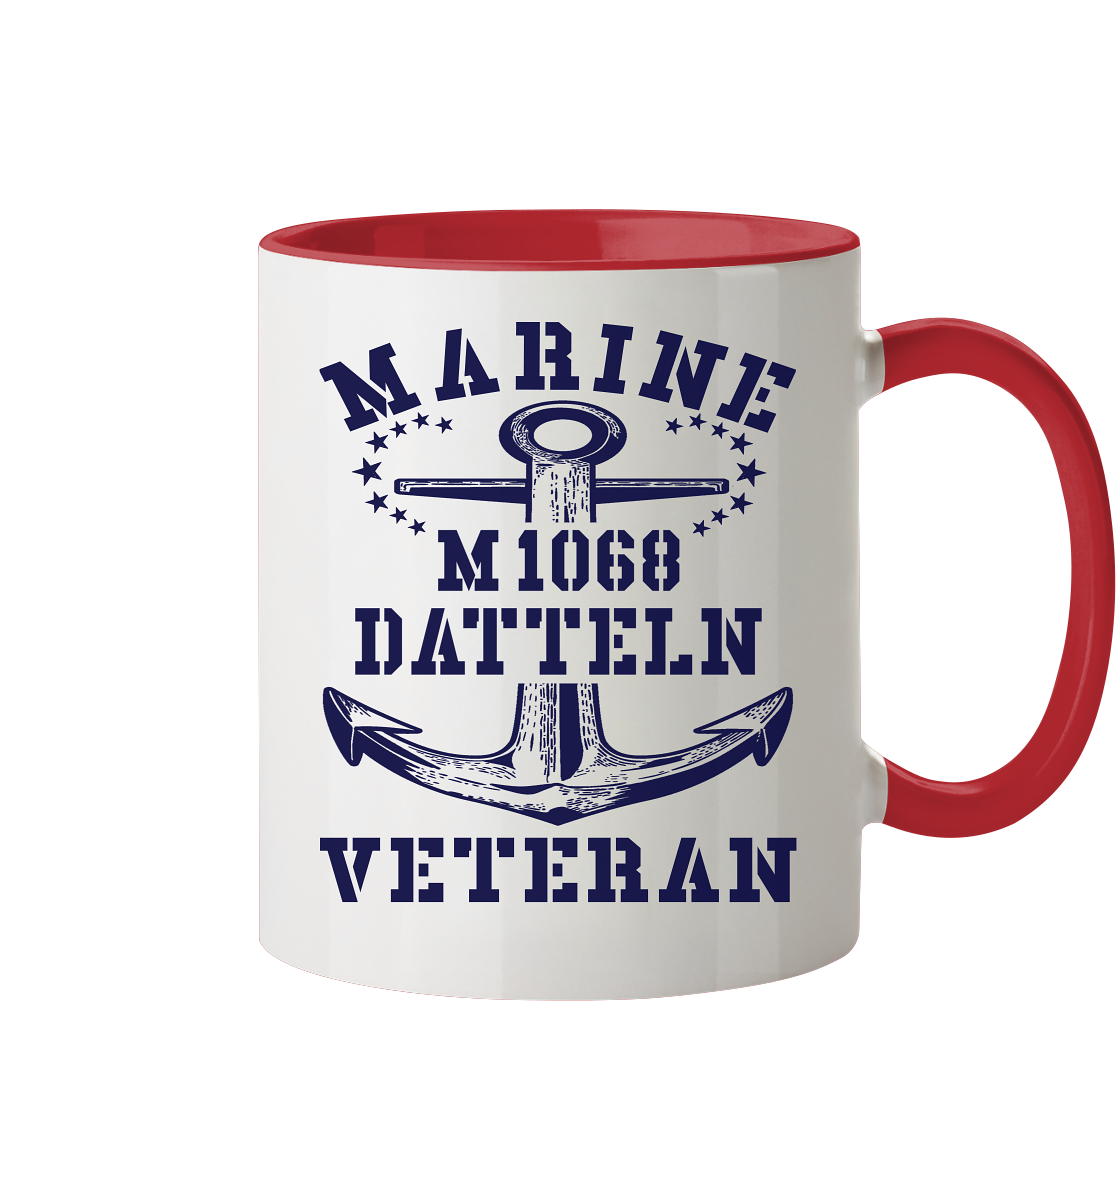 Mij.-Boot M1068 DATTELN Marine Veteran - Tasse zweifarbig